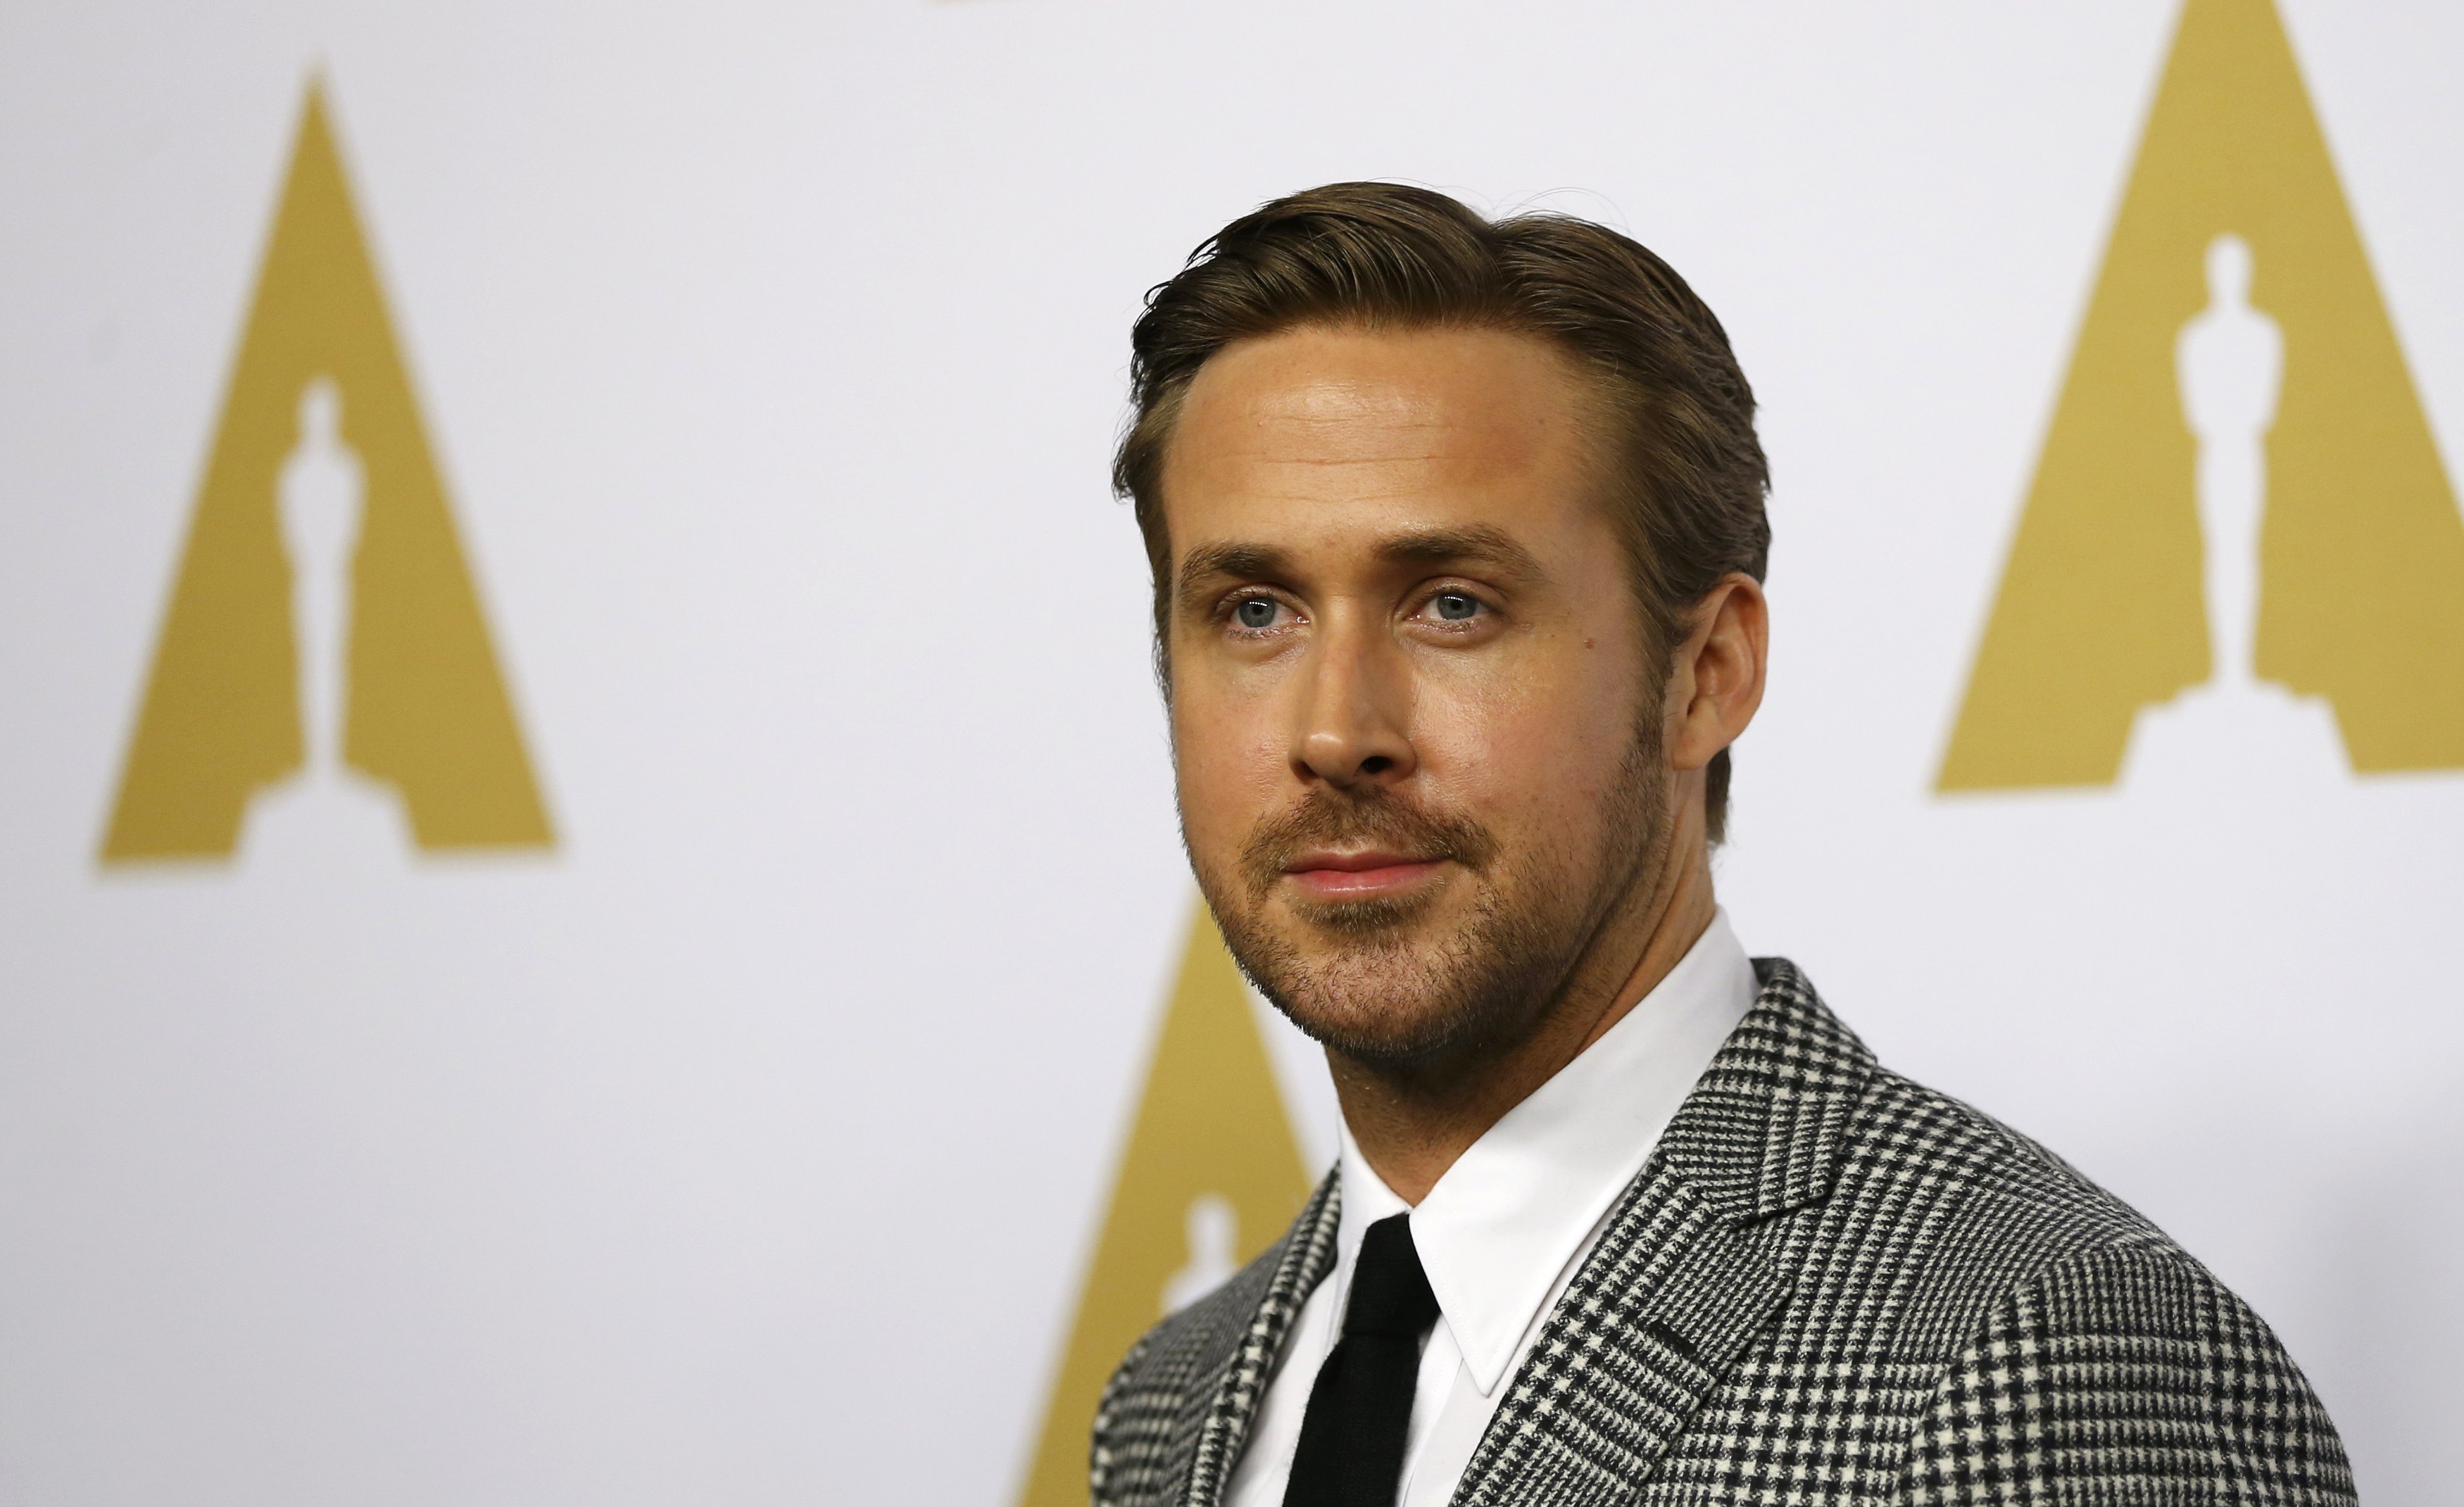 Un primer vistazo a Ryan Gosling en “Barbie” enloquece las redes sociales (FOTO)